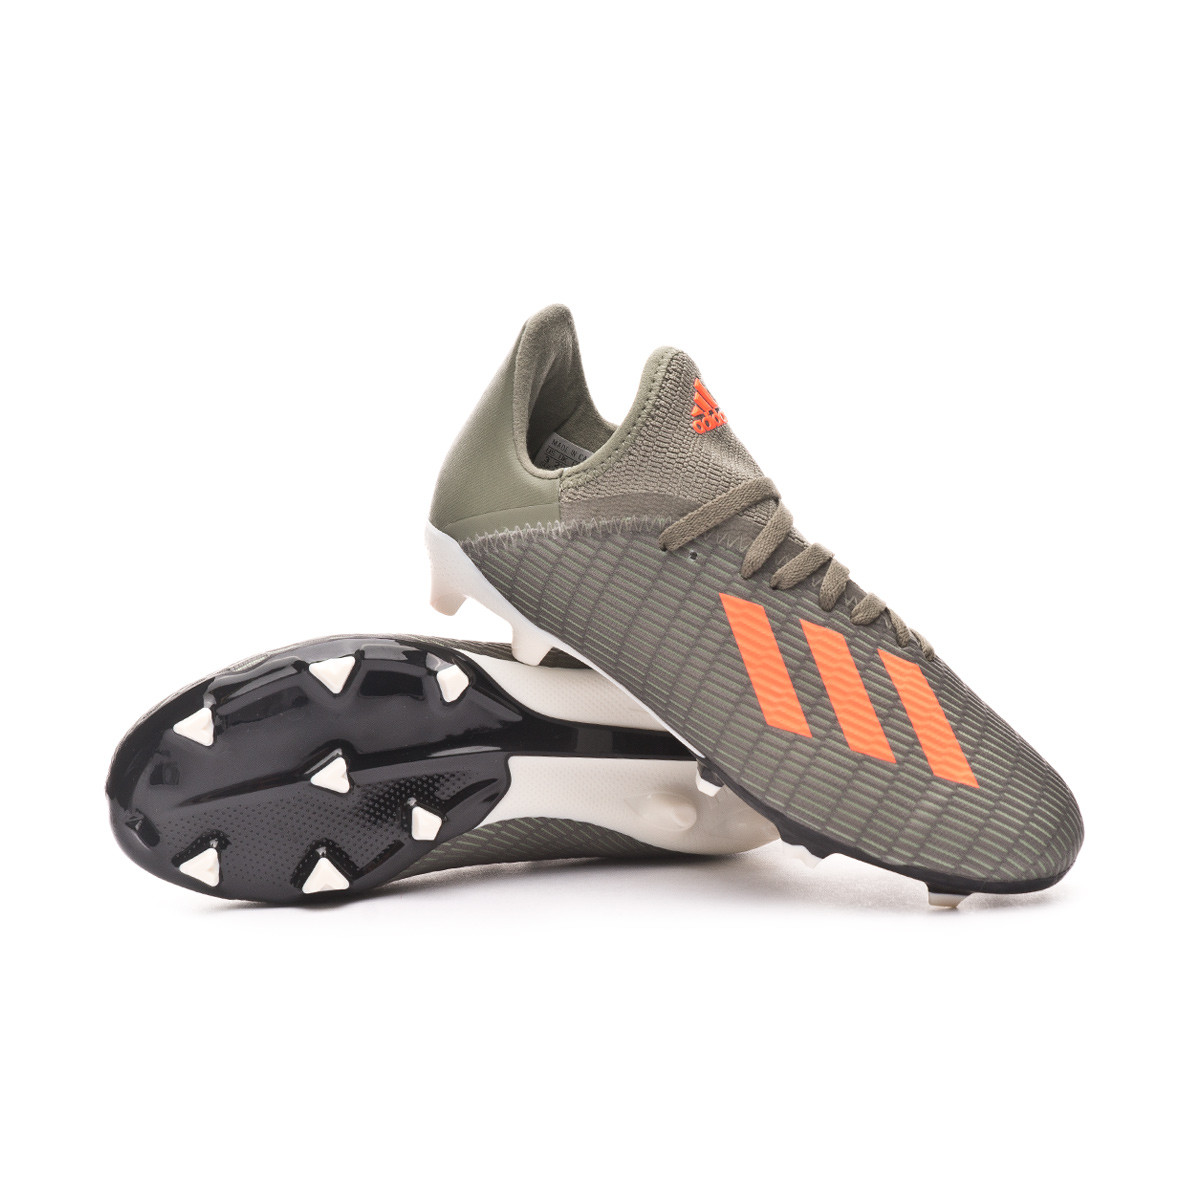 adidas football boots x19 3